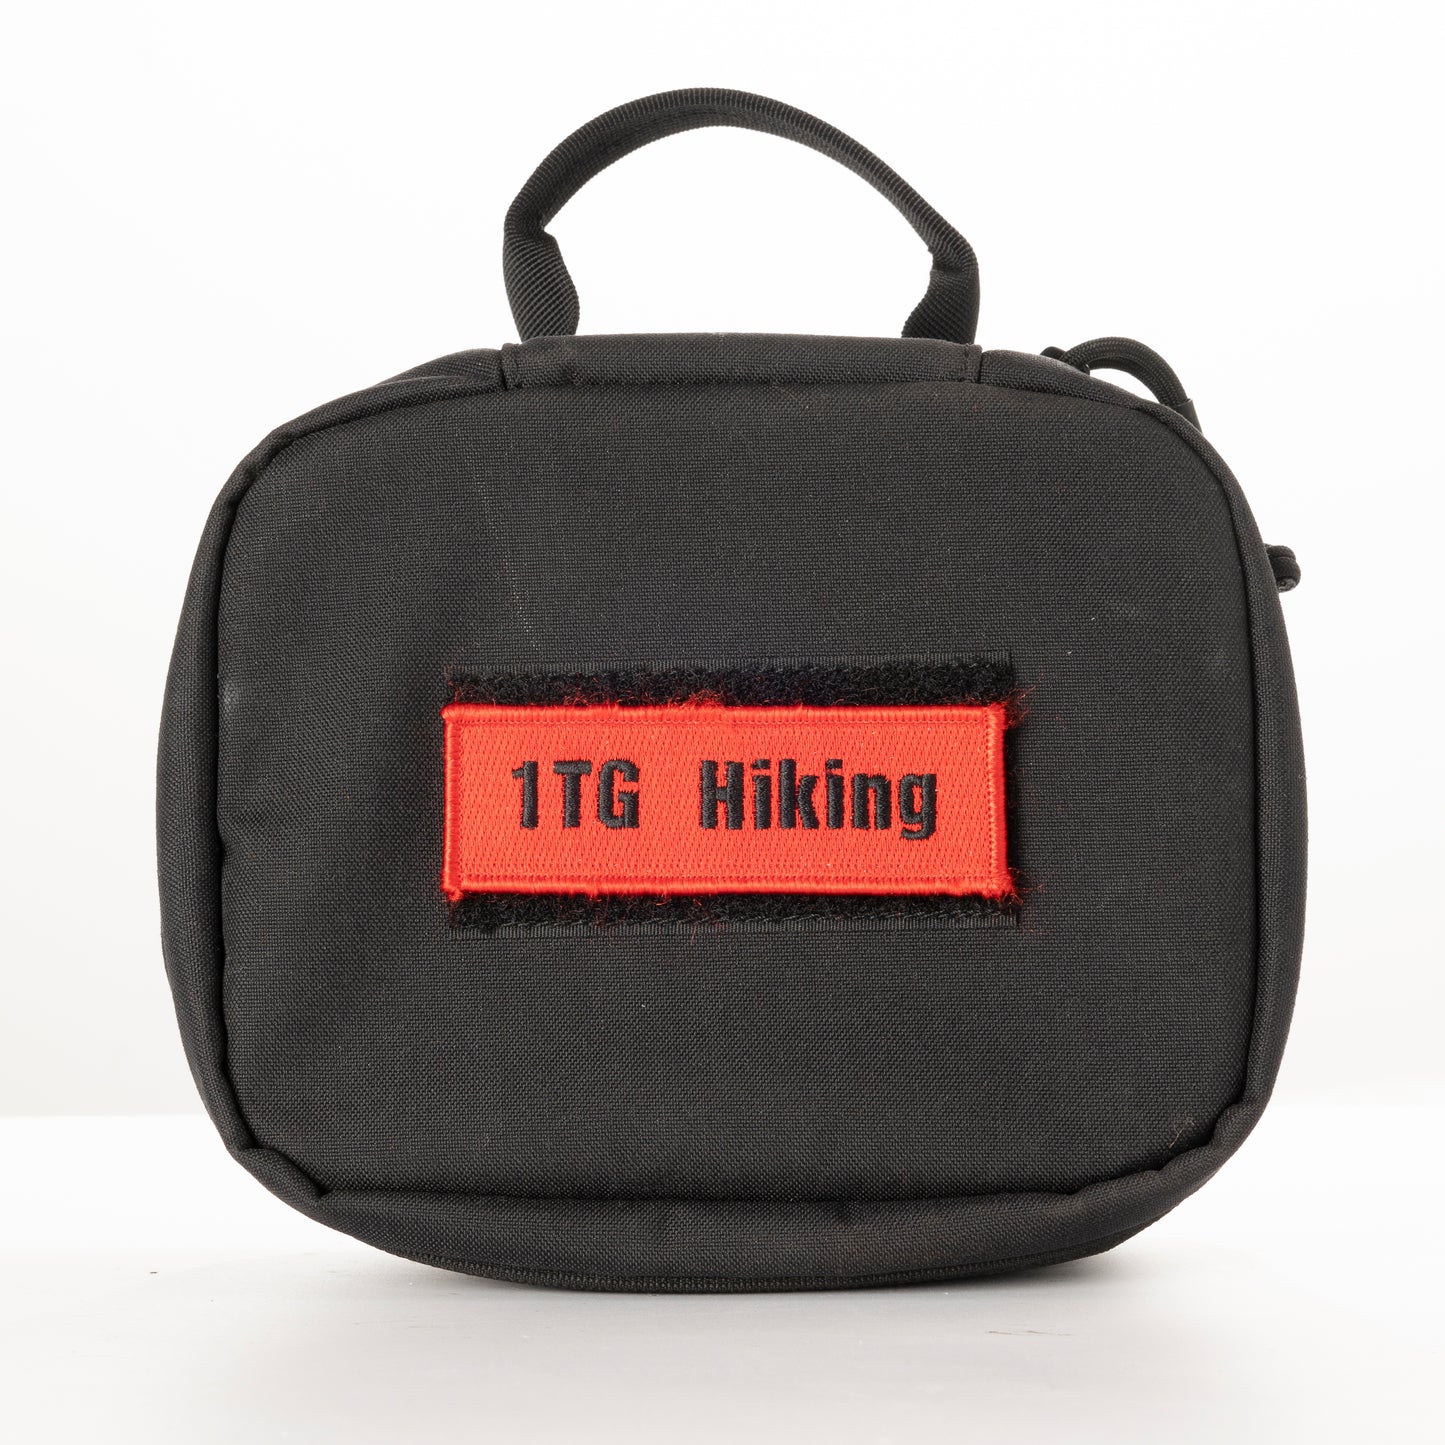 1TG HIKING Camping handbag